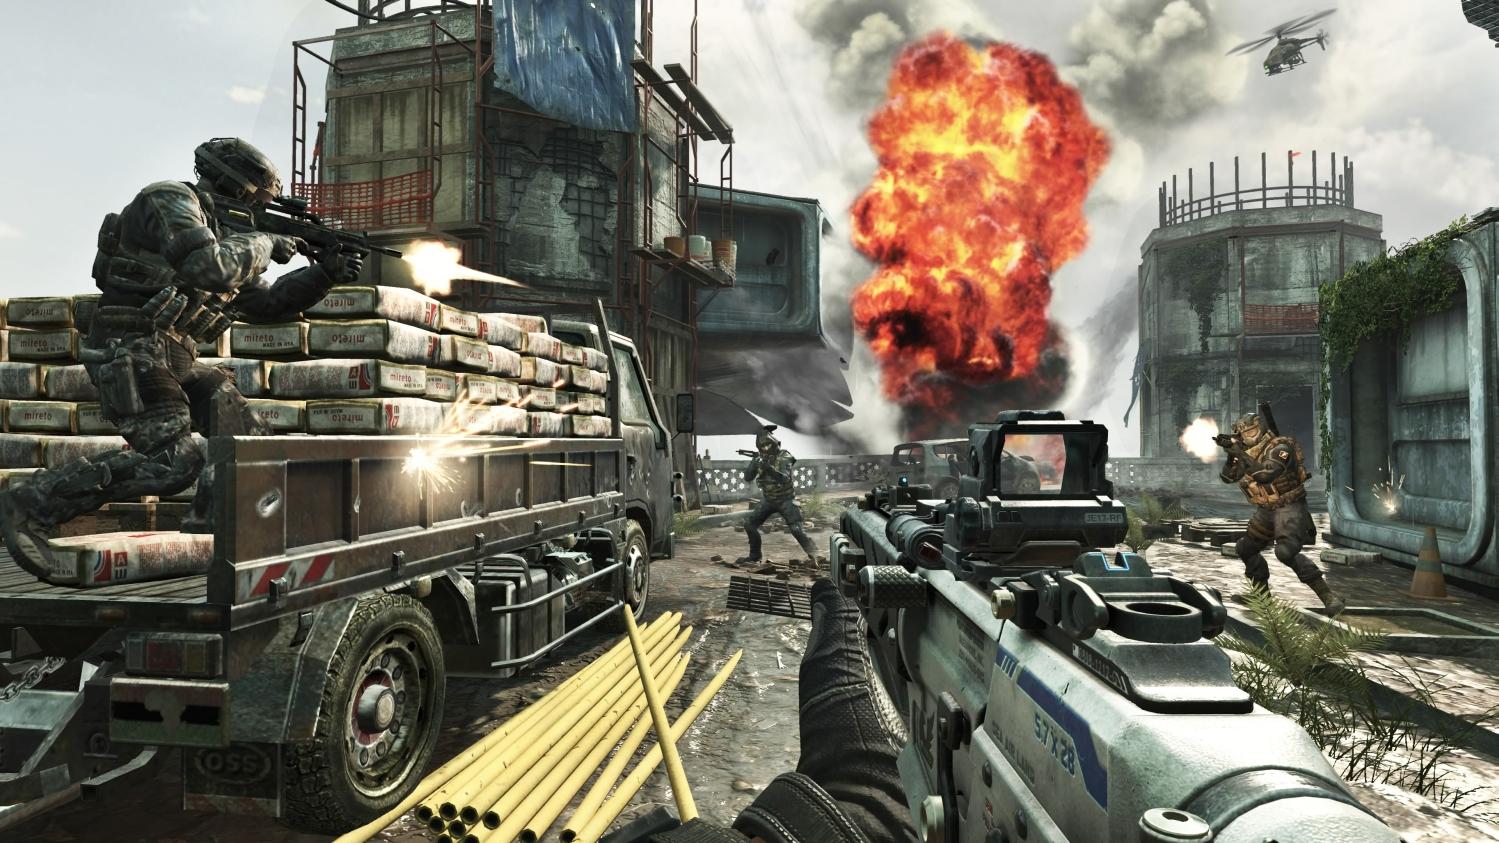 Call of Duty: Black Ops II Apocalypse Tips